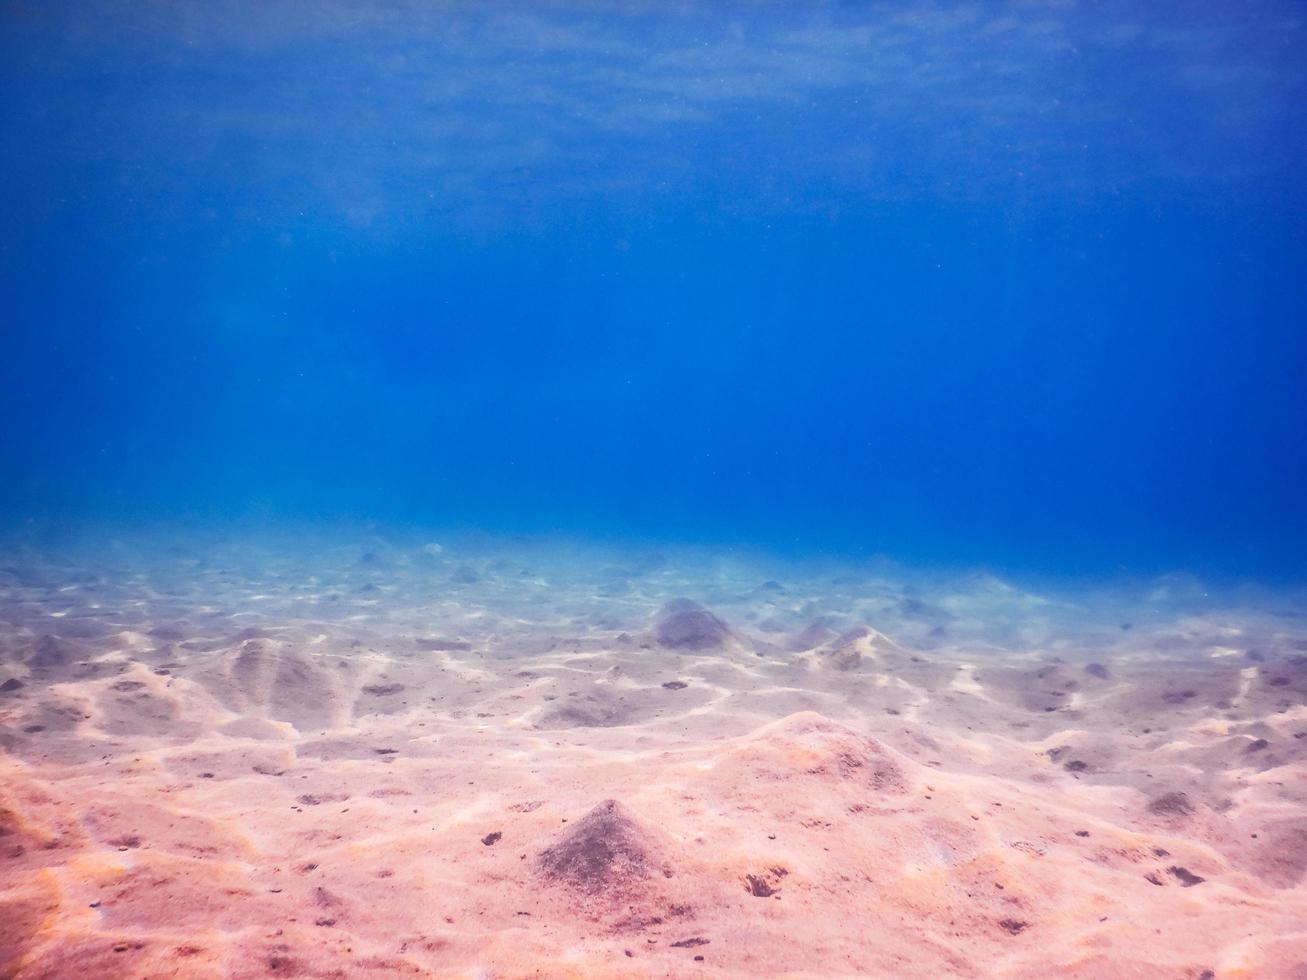 paisagem do fundo do mar com águas azuis profundas enquanto mergulhava pela manhã foto